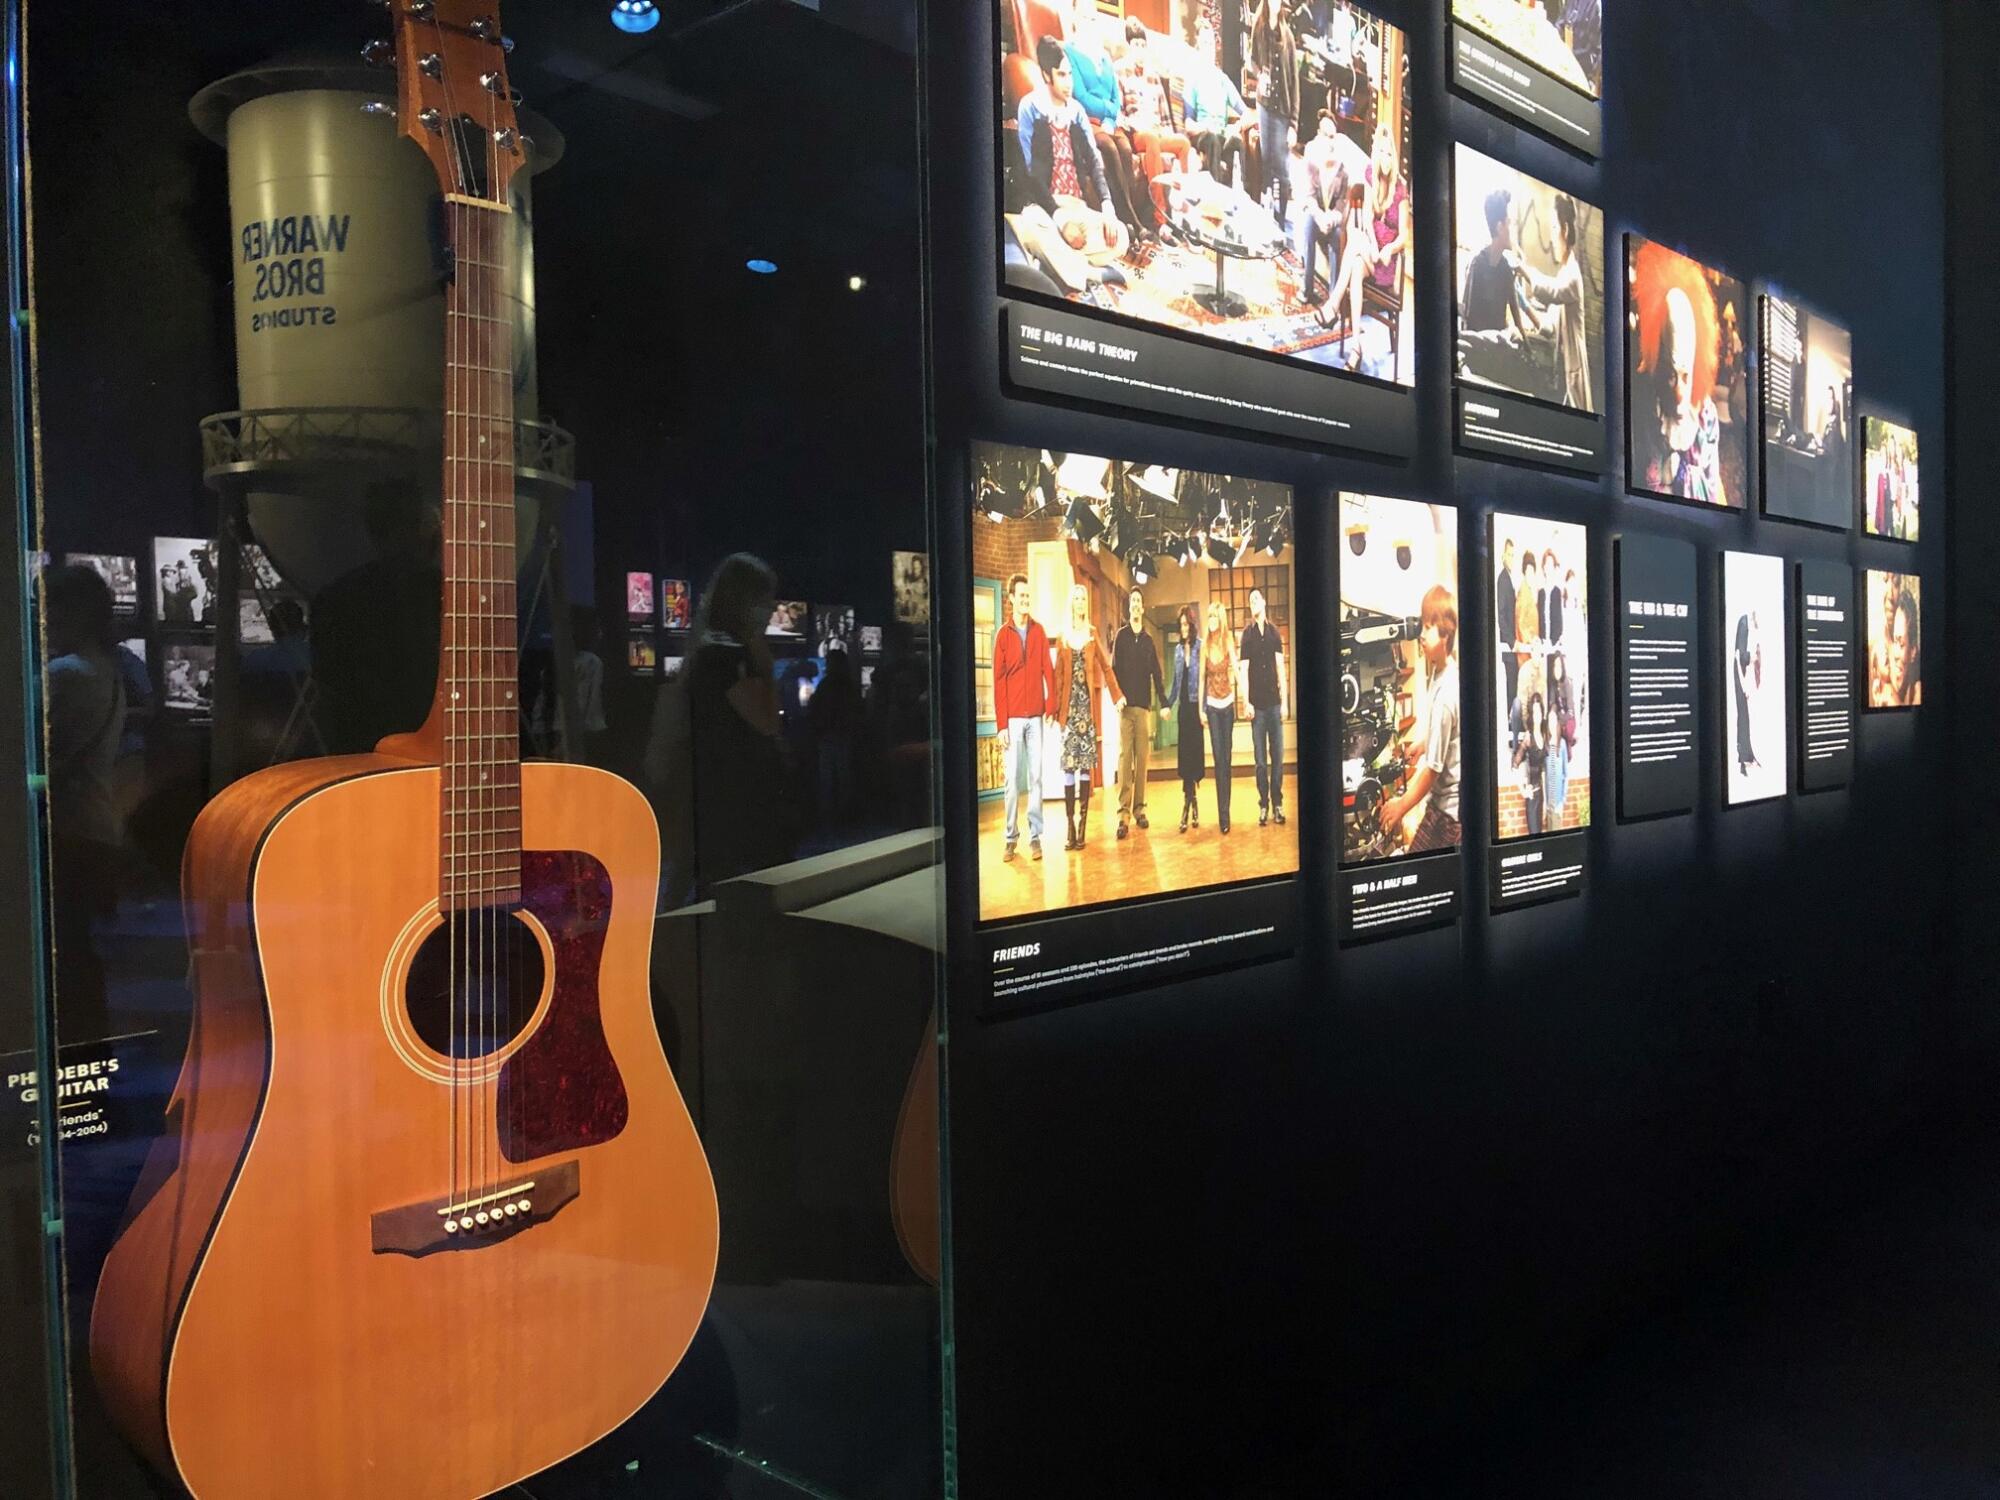 La guitarra de Phoebe del sitcom Friends forma parte la exhibición.